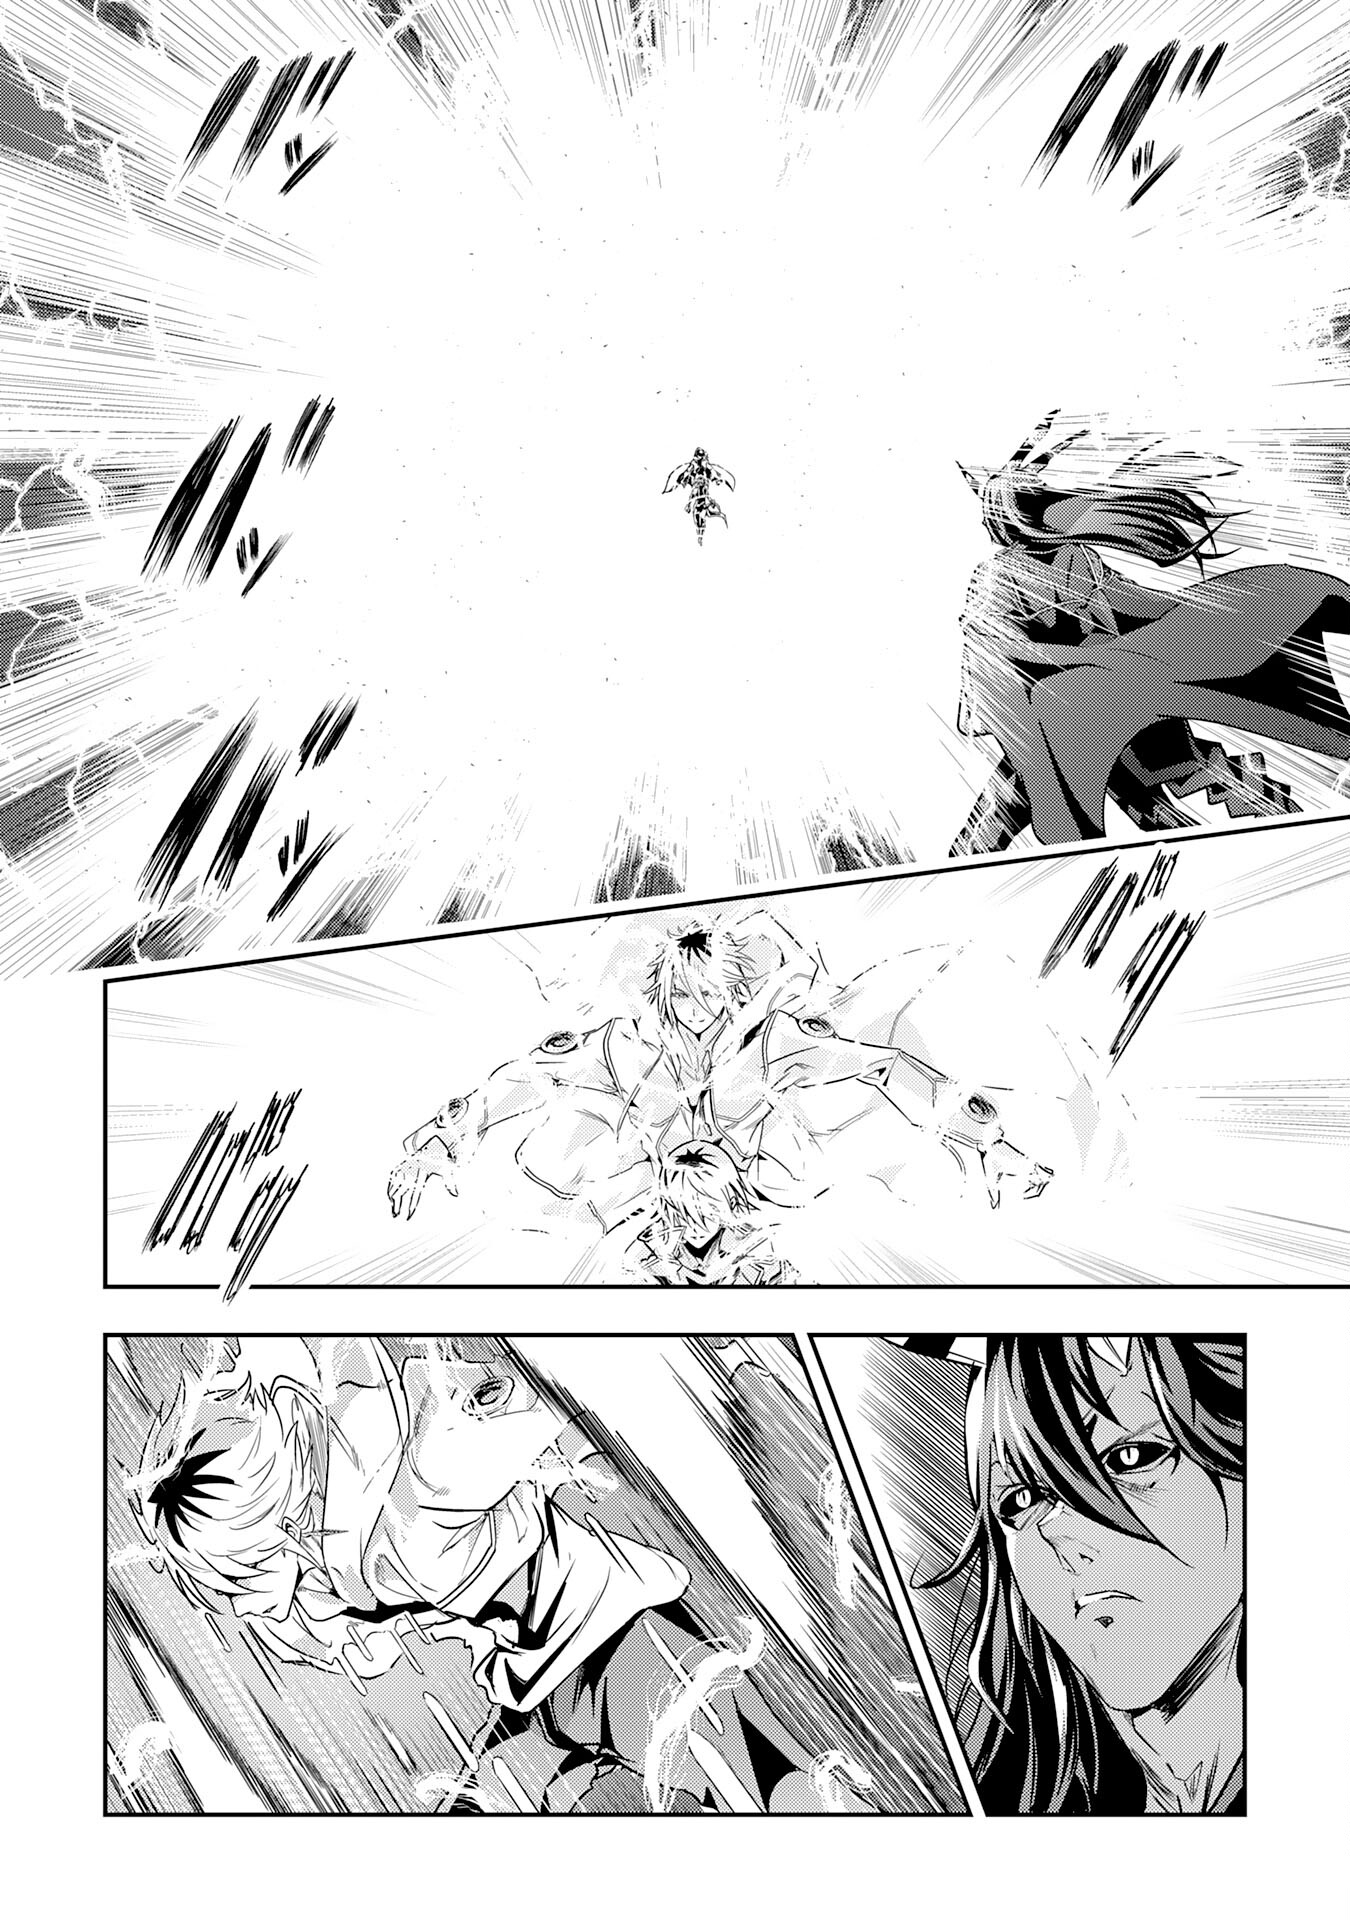 Nanairo Raijyutsushi No Eiyutan - Chapter 21 - Page 2